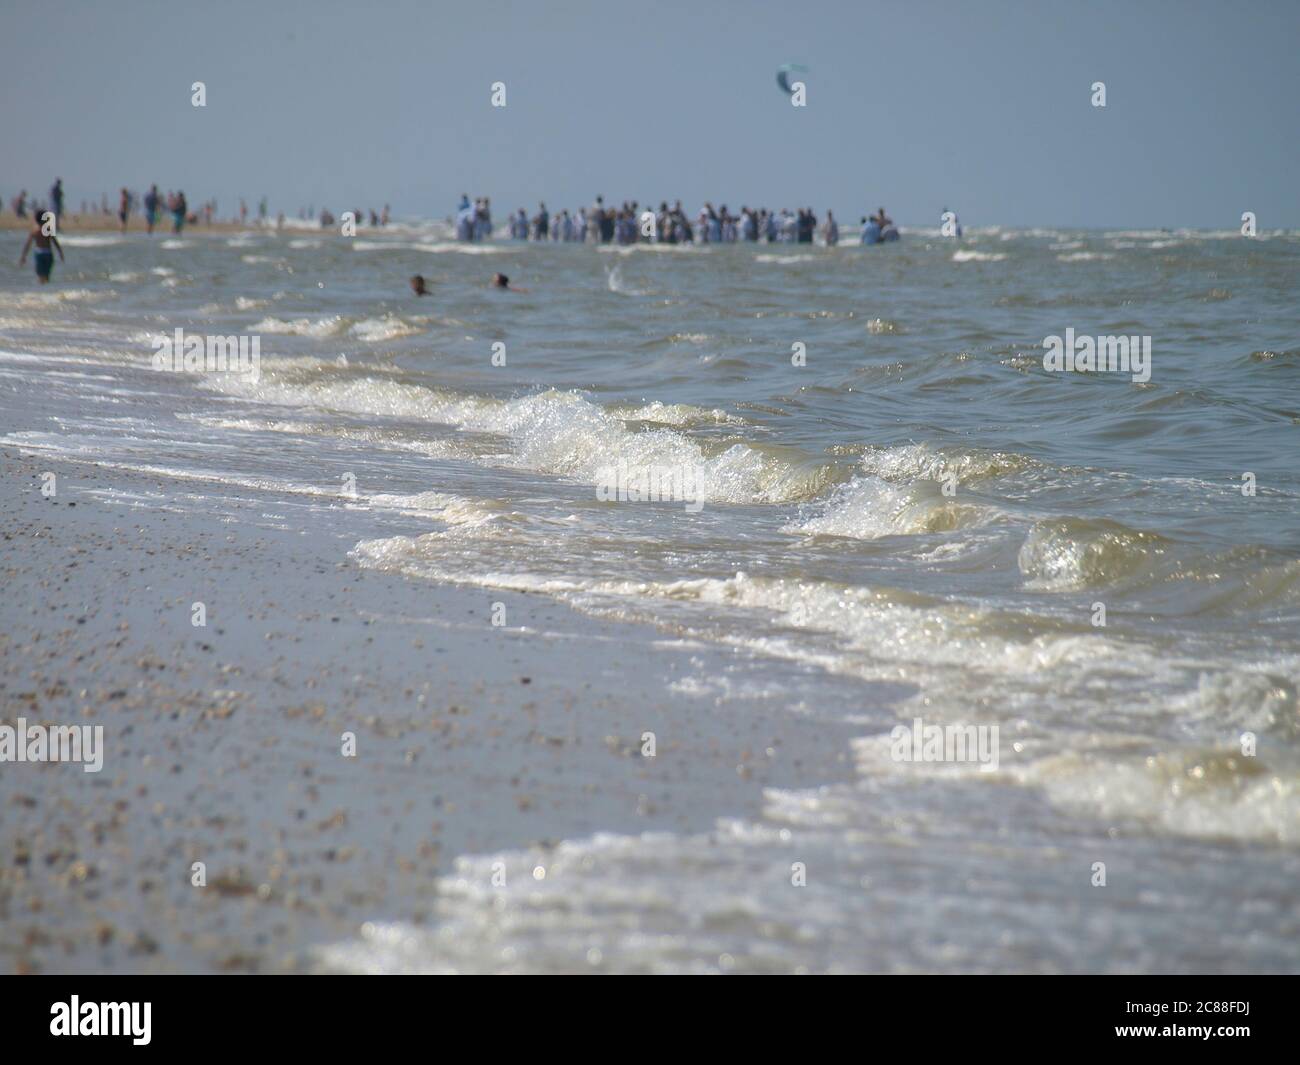 Ruhige Wellen am Strand der Nordsee in Katwijk/NL. Entfernte Menschen im unscharfen Hintergrund Stockfoto